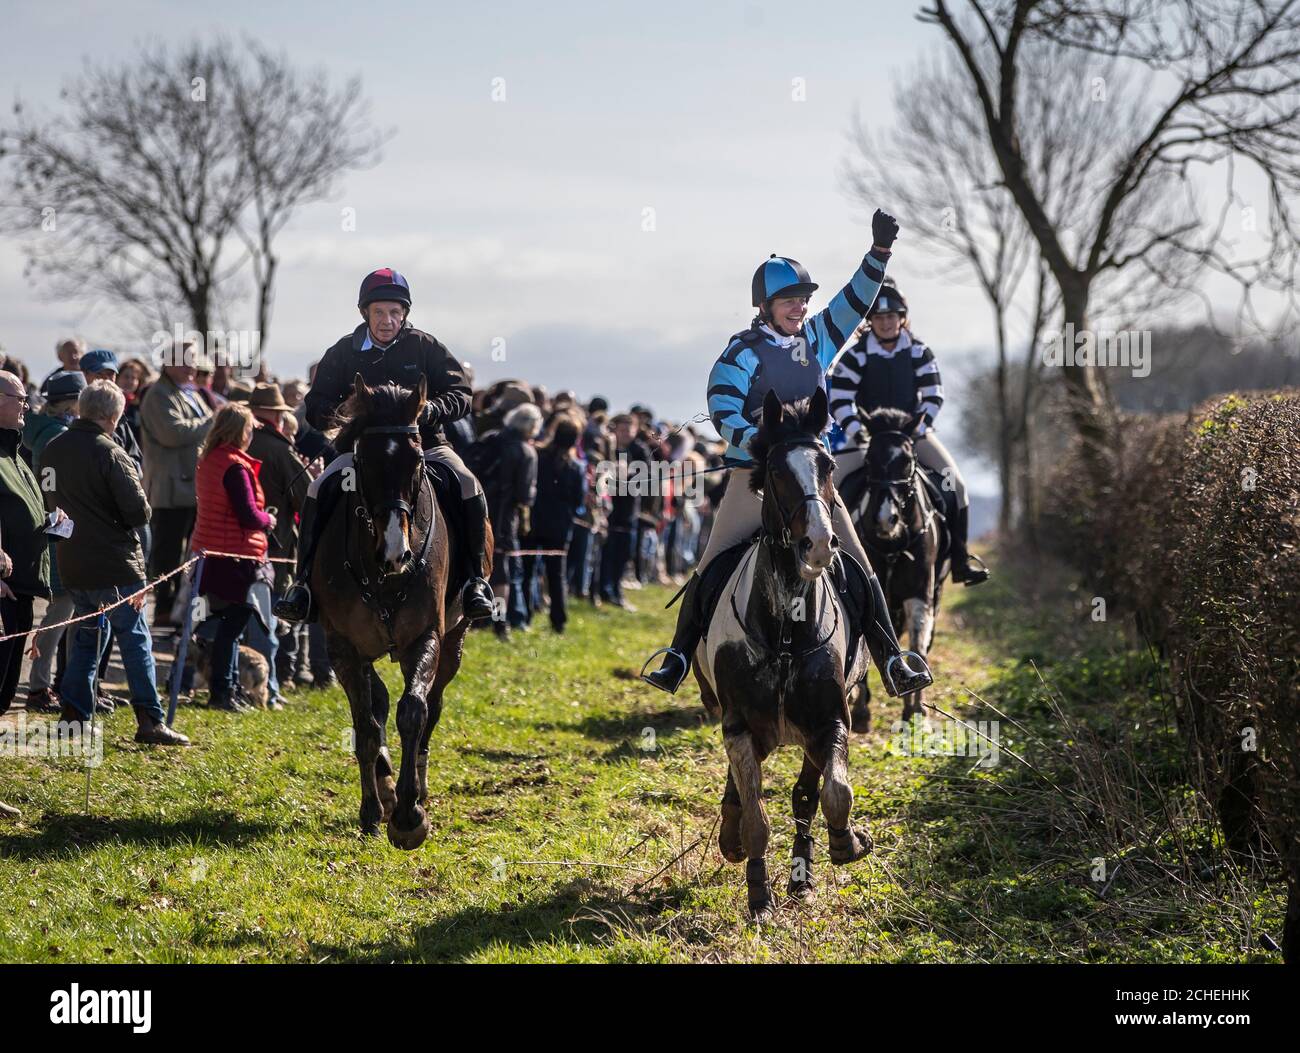 Ein Reiter überquert die Ziellinie während des Kiplingcotes Derby, Englands ältestem Pferderennen, das in diesem Jahr sein 500-jähriges Jubiläum feierte. Stockfoto